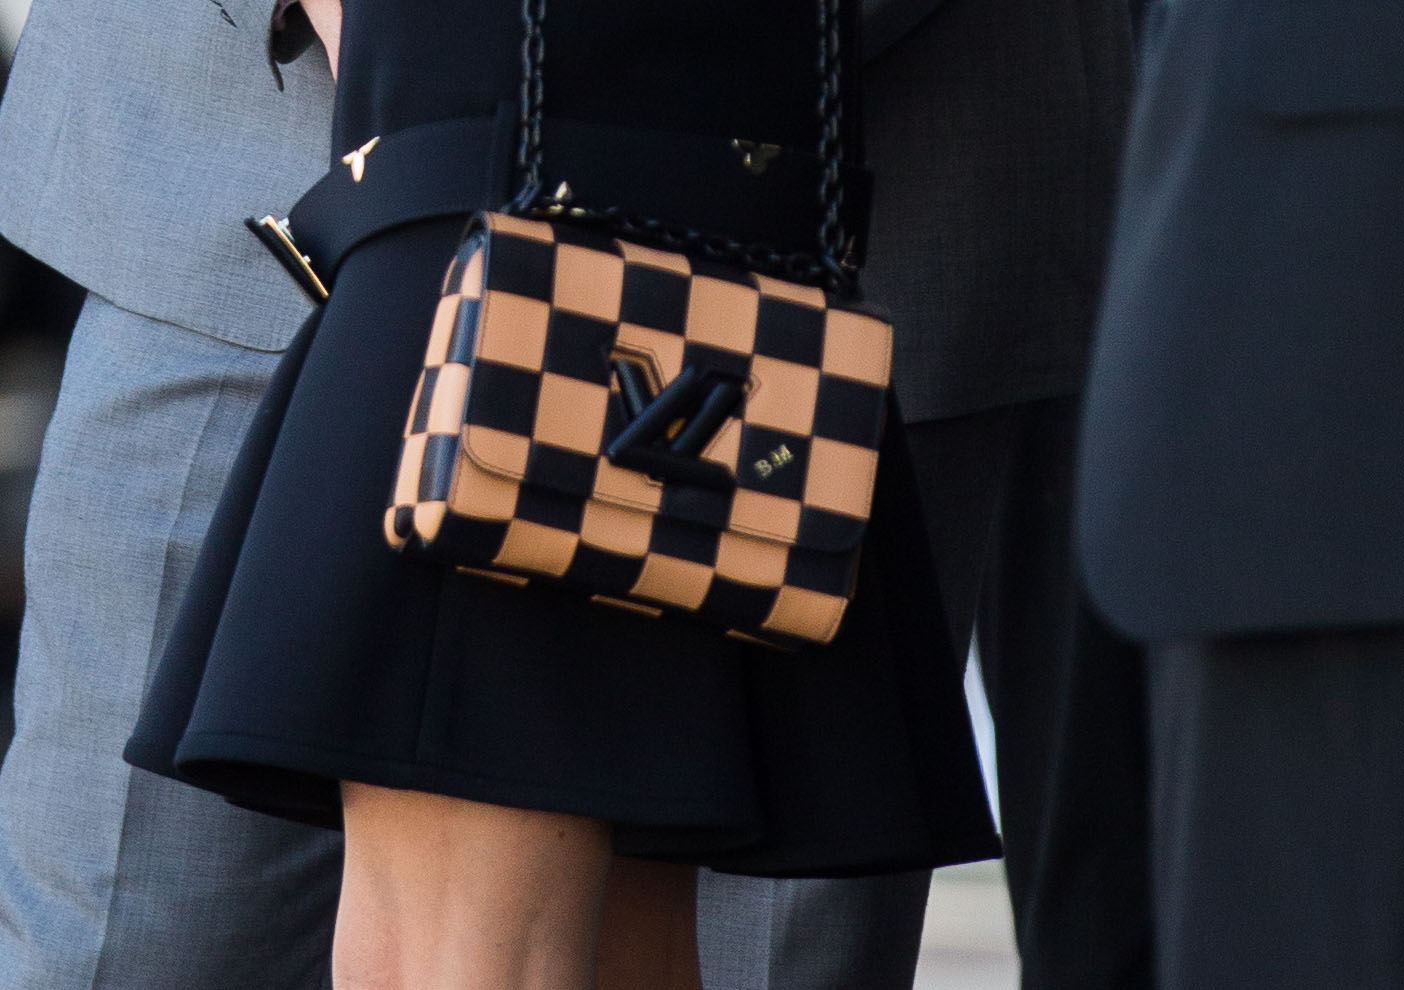 PHOTOS - Le sac fétiche de Brigitte Macron, le Capucines de Louis Vuitton,  séduit les influenceuses du monde entier - Gala